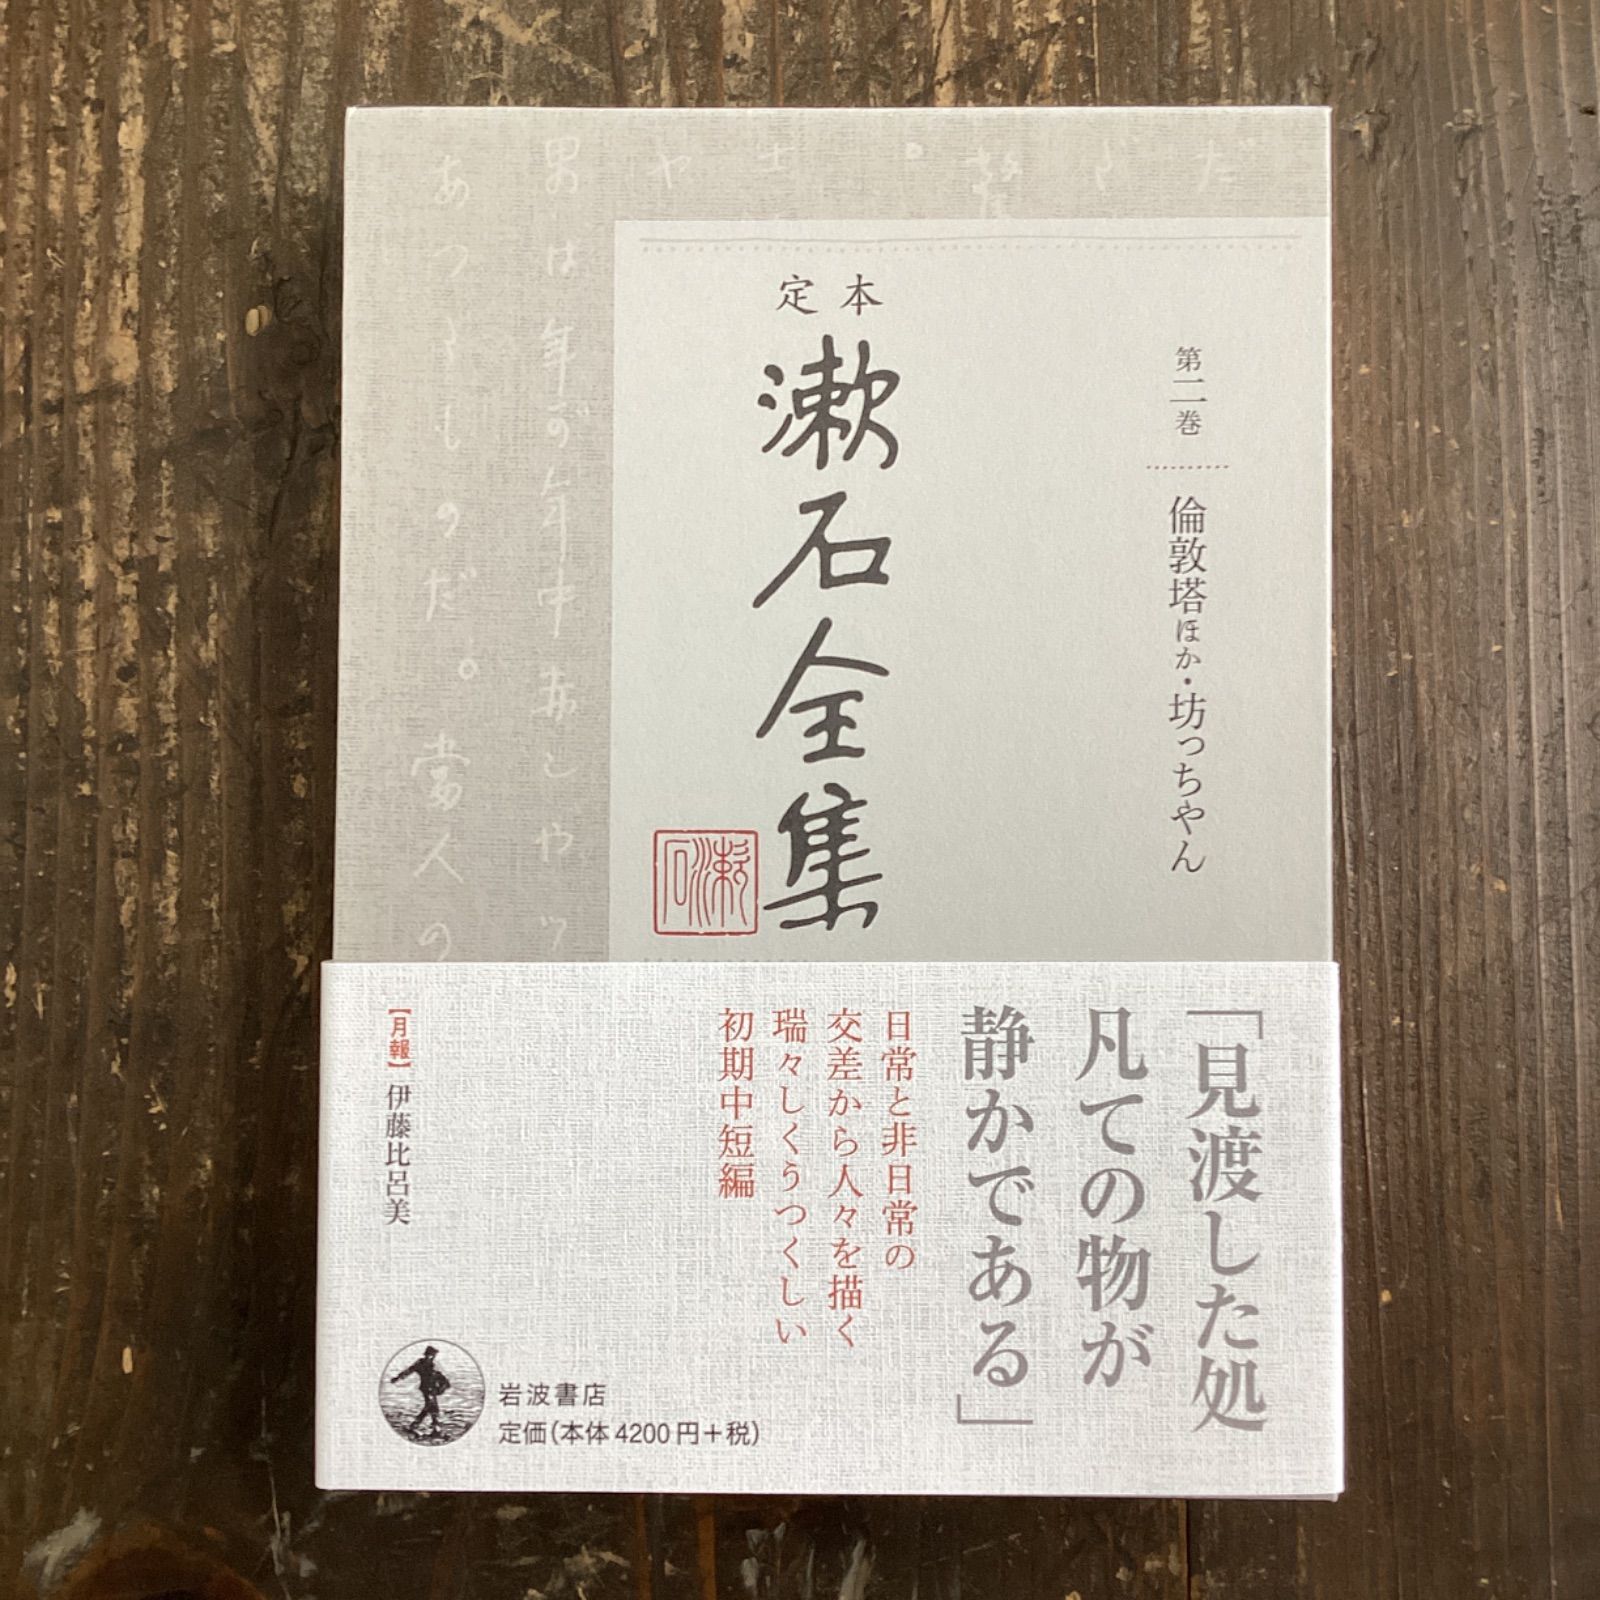 漱石全集』岩波書店。全二十八巻+別巻。1993年度版。 - 本